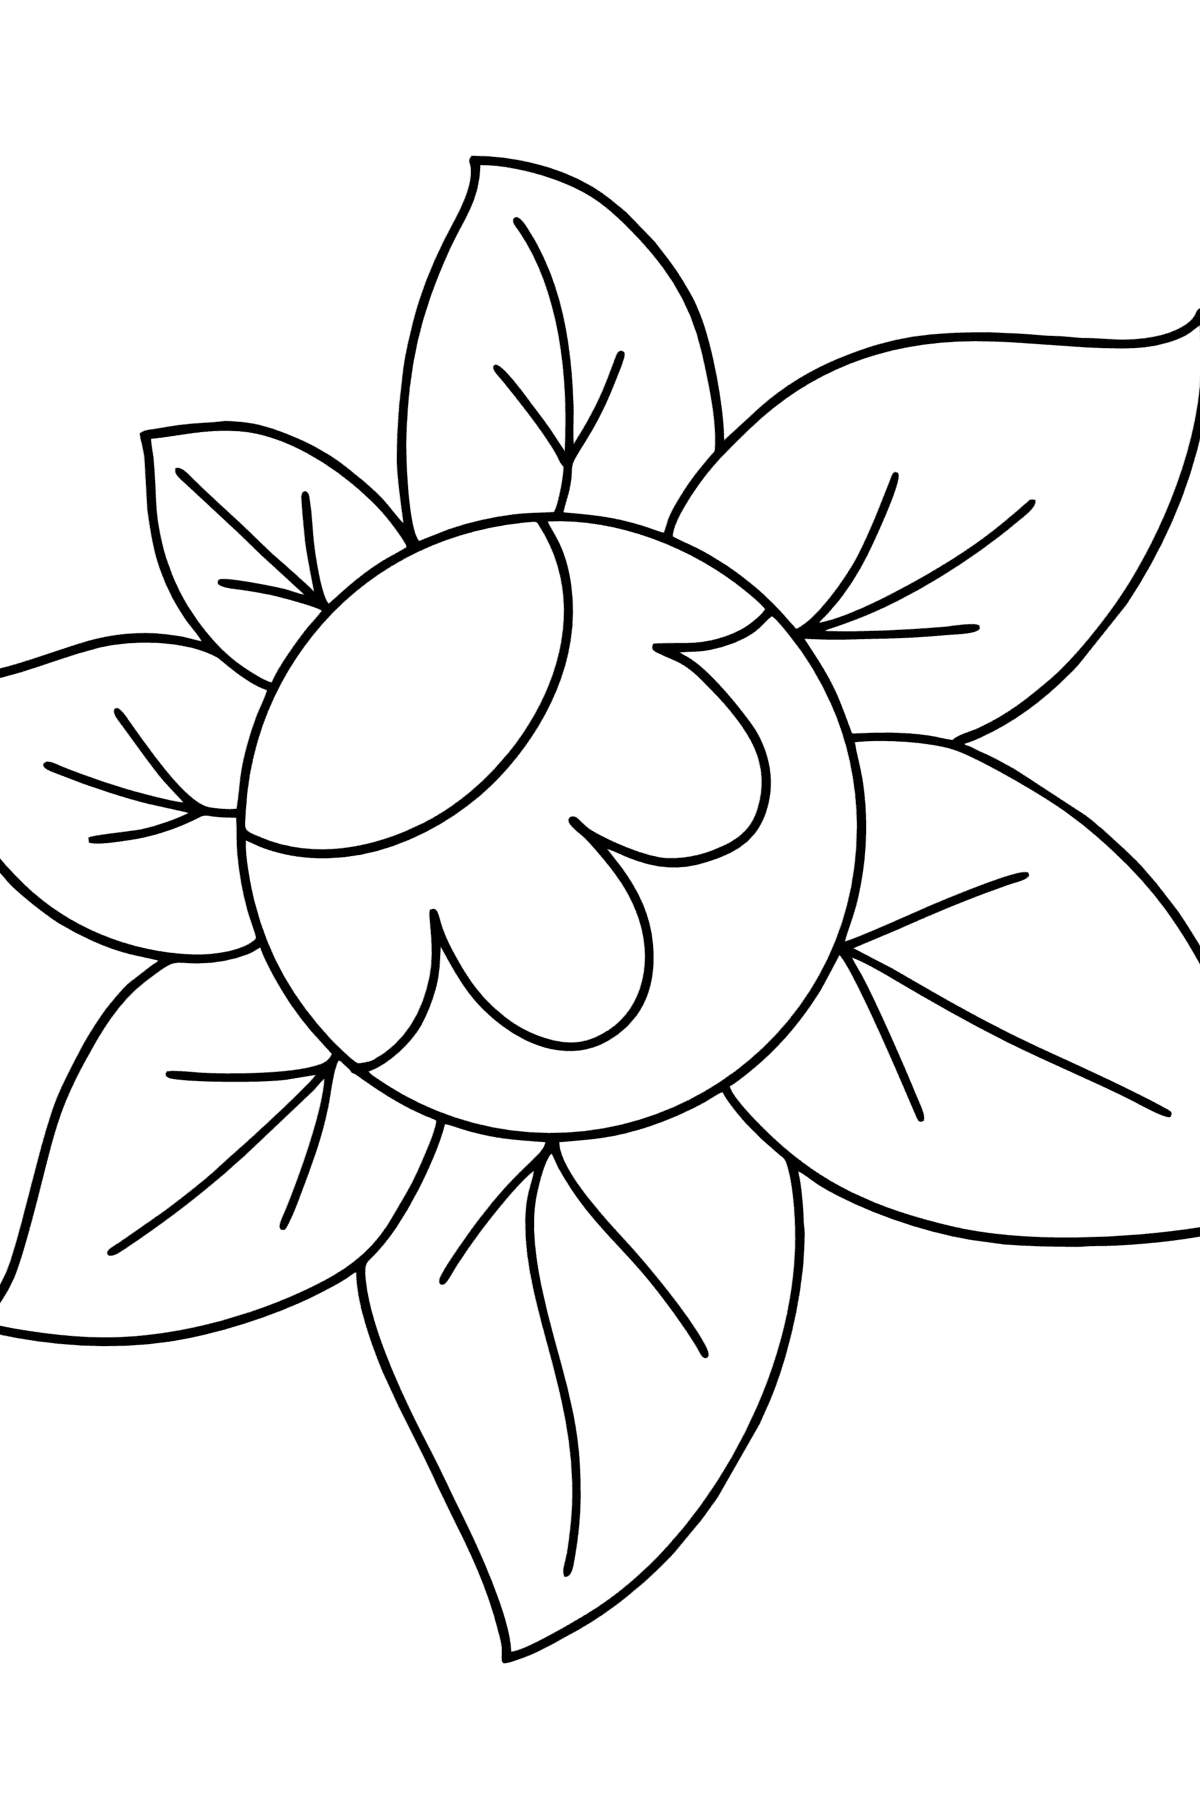 Ausmalbild Zentangle Art Blume - Malvorlagen für Kinder